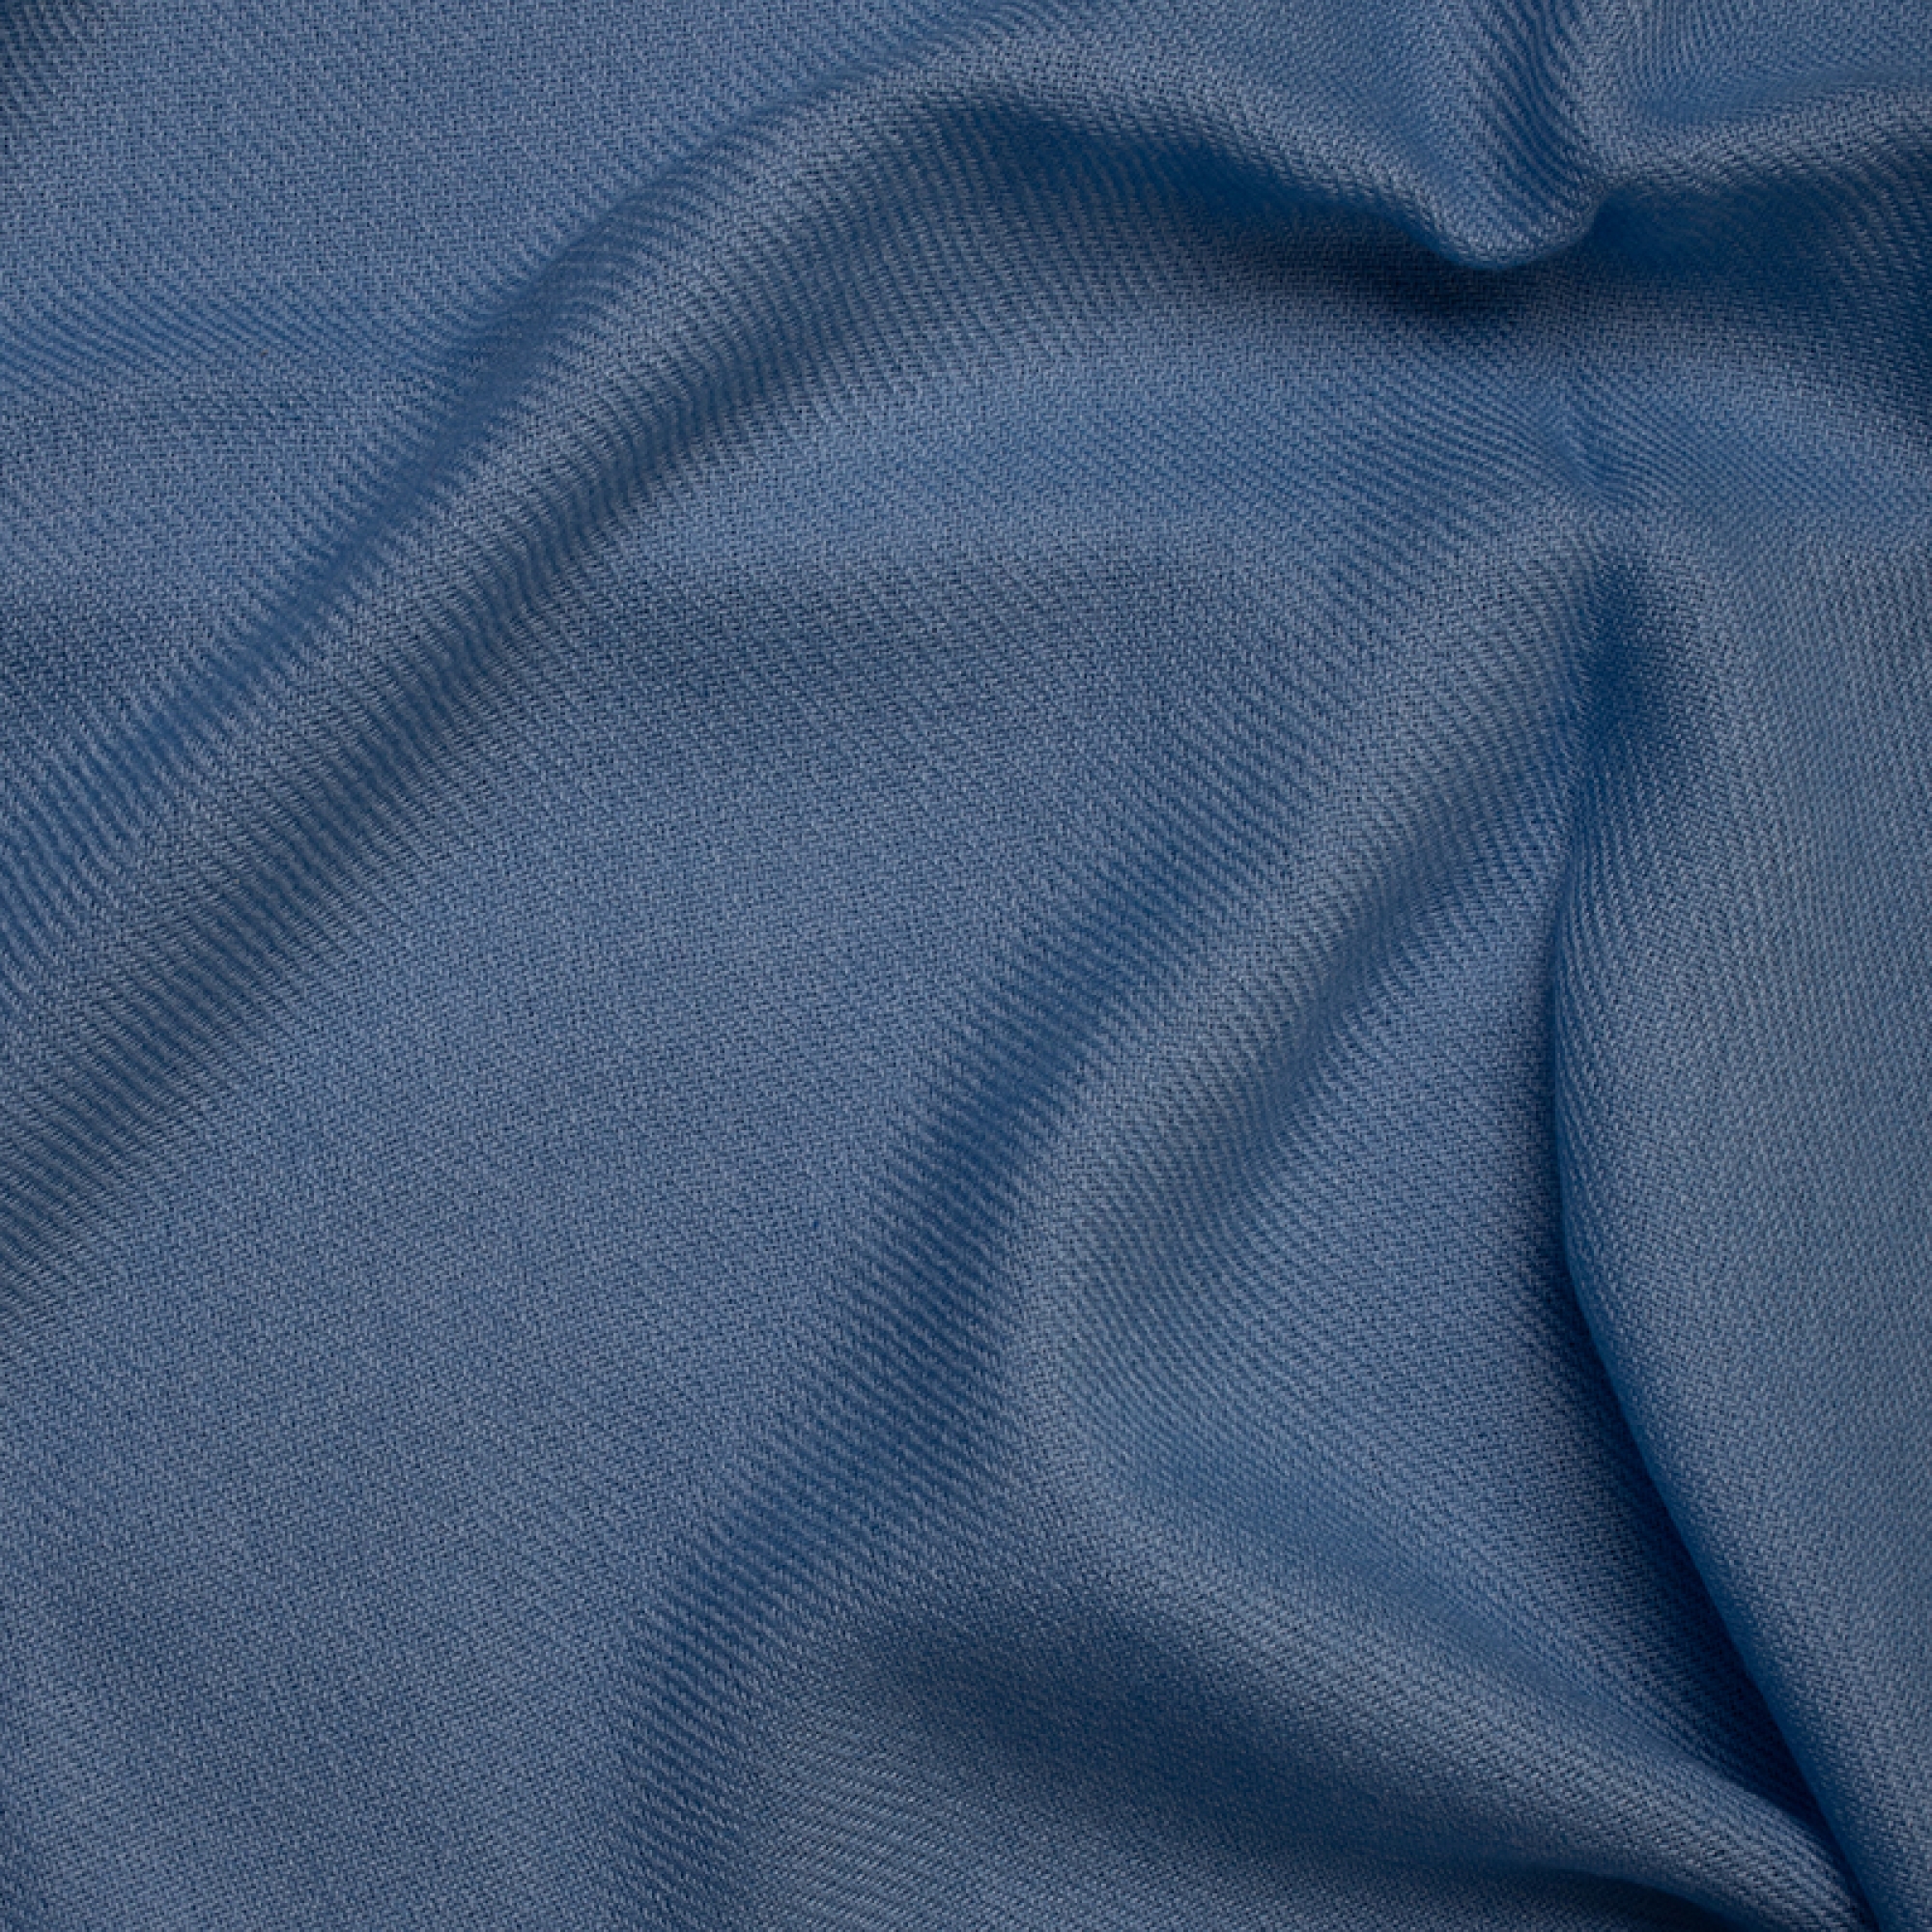 Cachemire accessoires couvertures plaids toodoo plain s 140 x 200 bleu celeste 140 x 200 cm